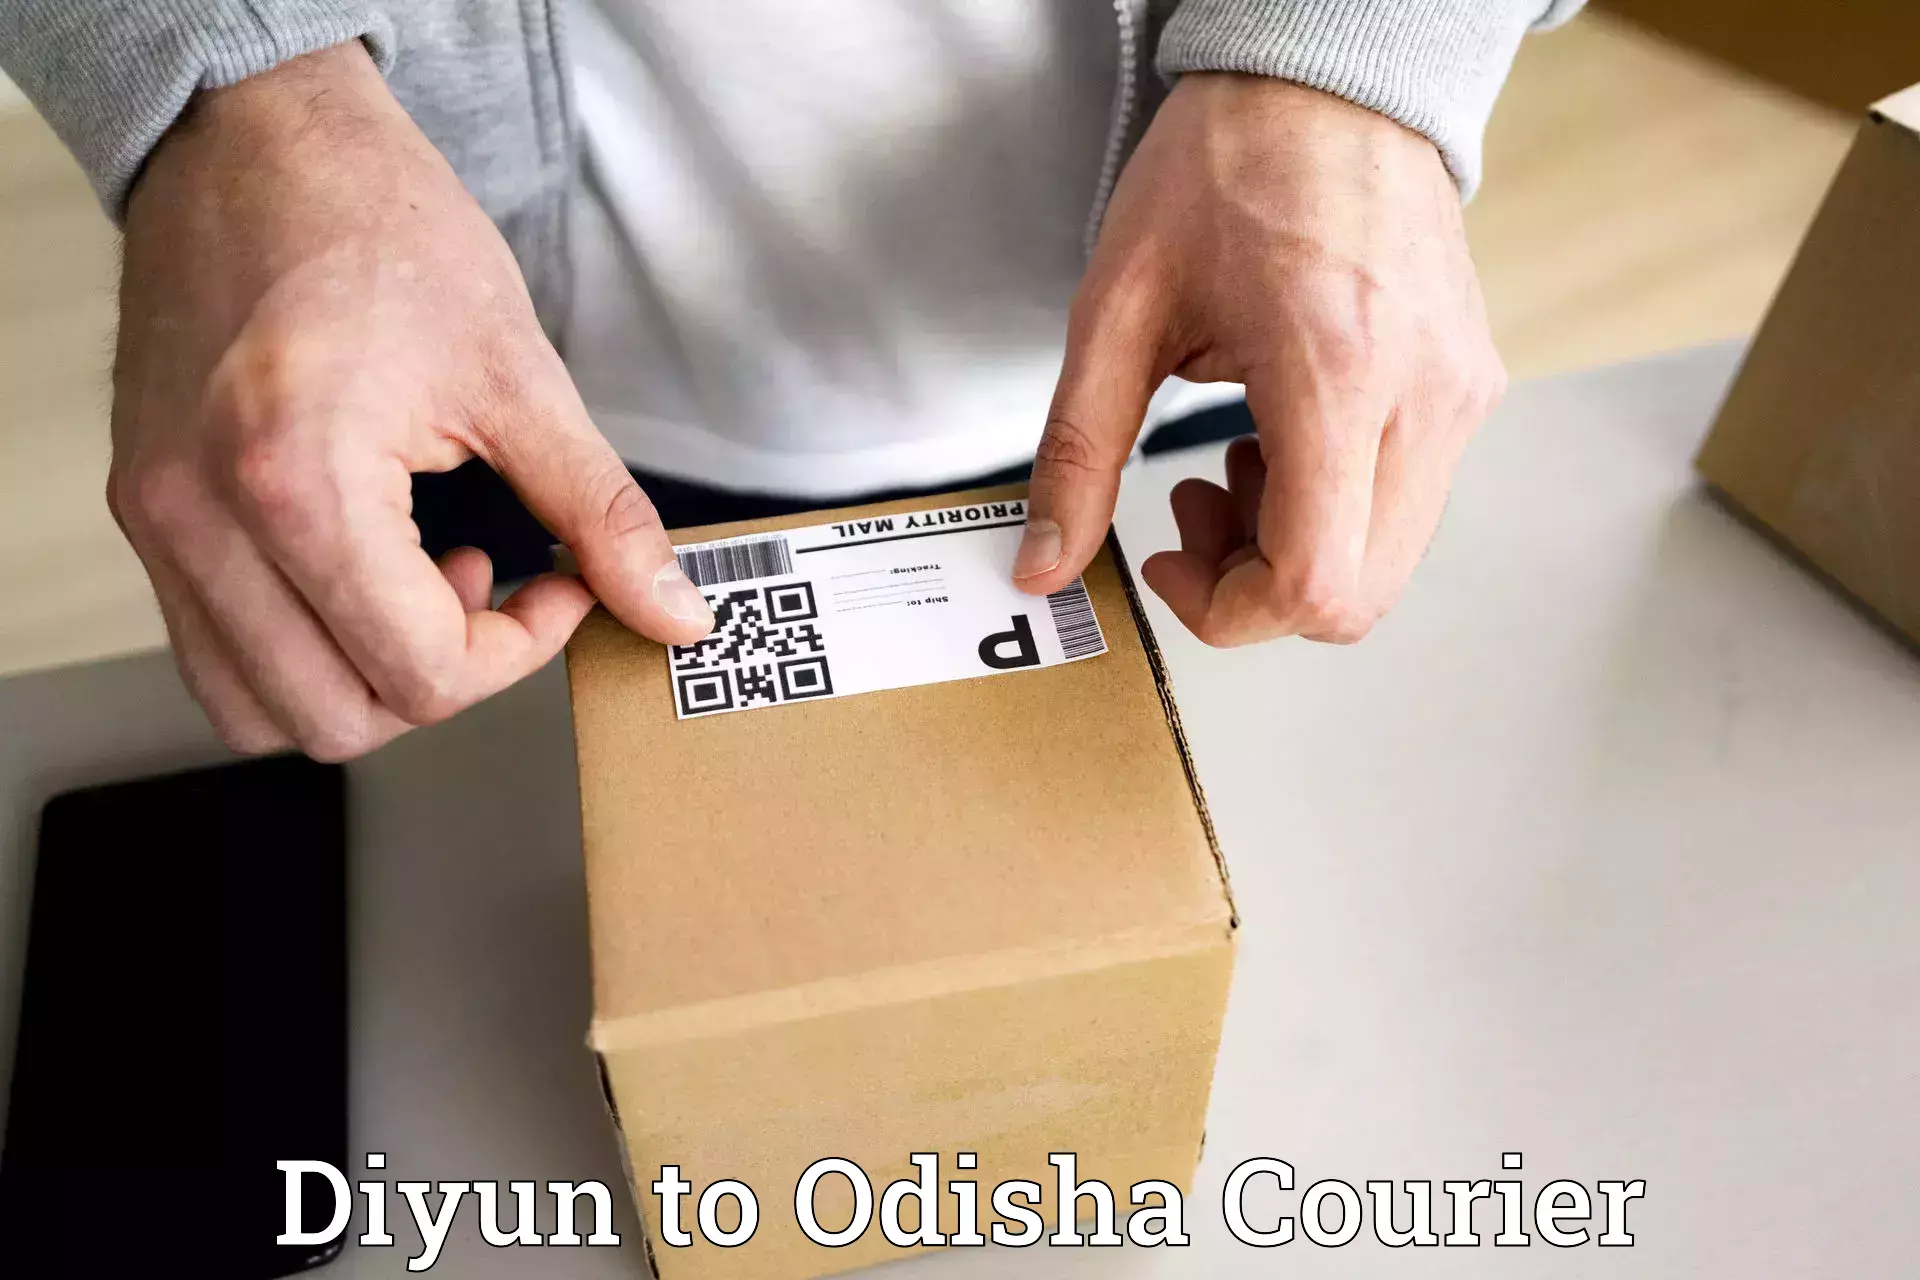 Nationwide parcel services Diyun to Paikana